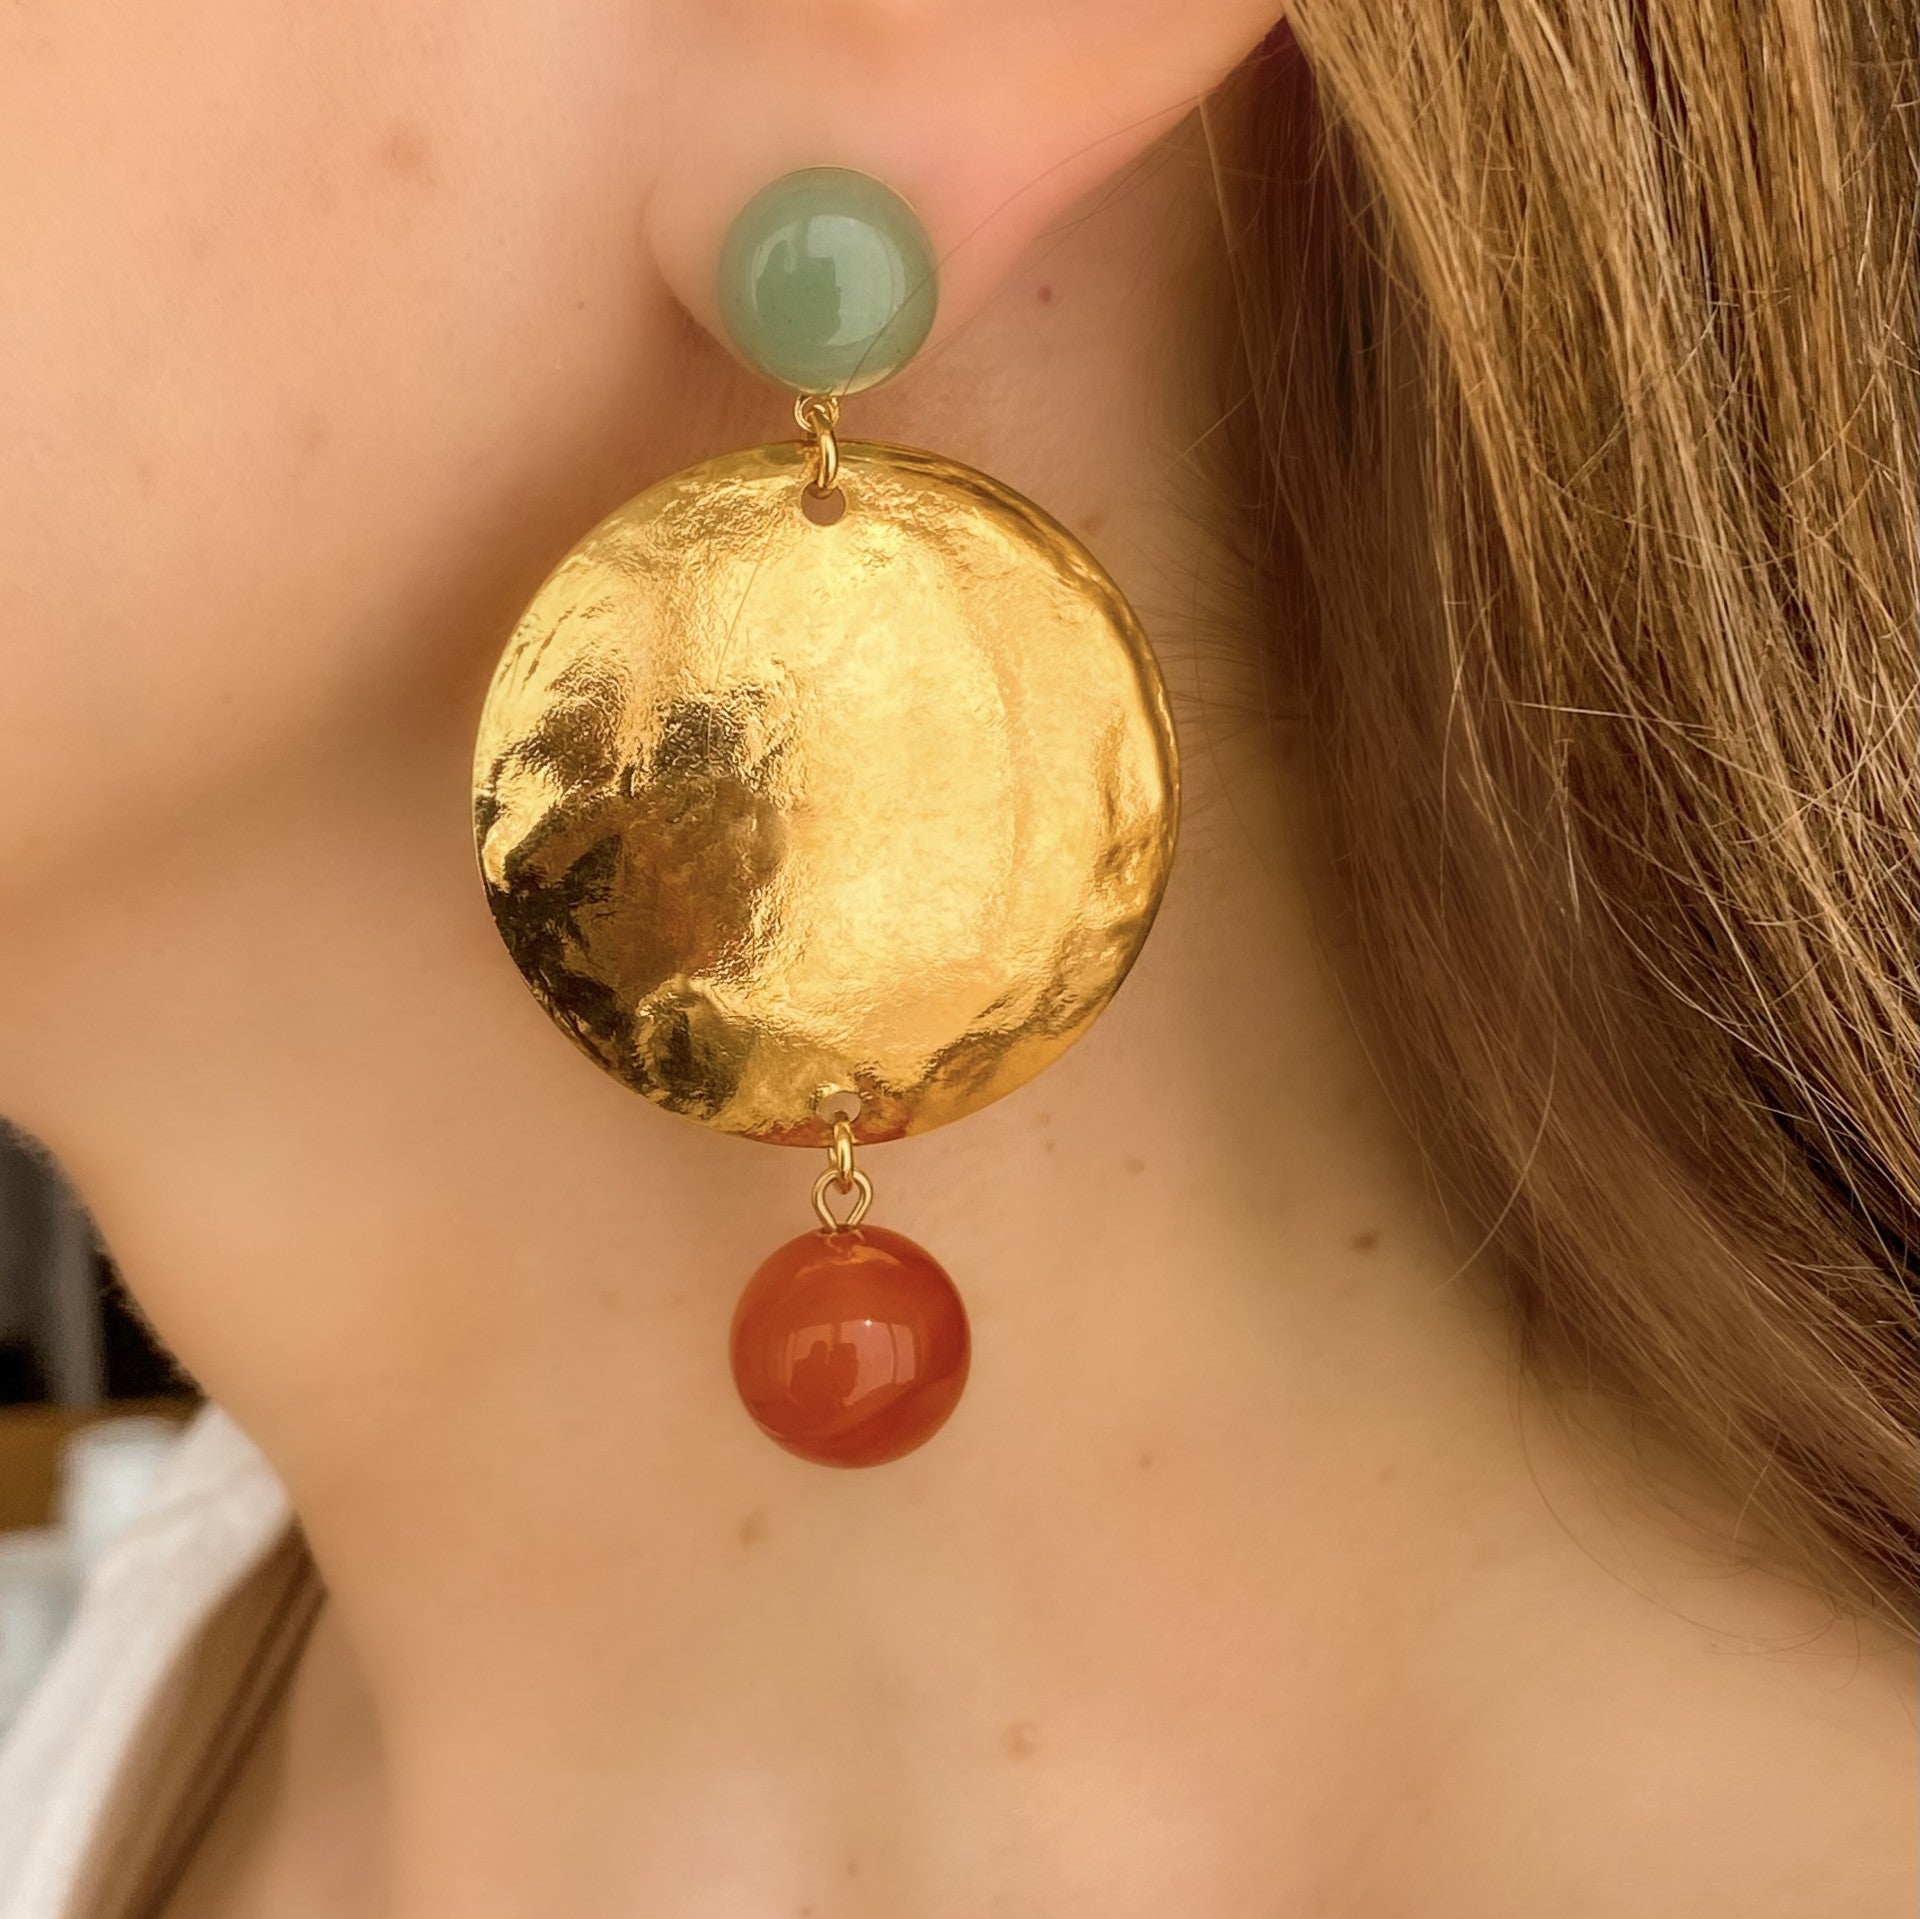 Boucles d’oreilles asymétriques Isabelle cornaline et quartz rose